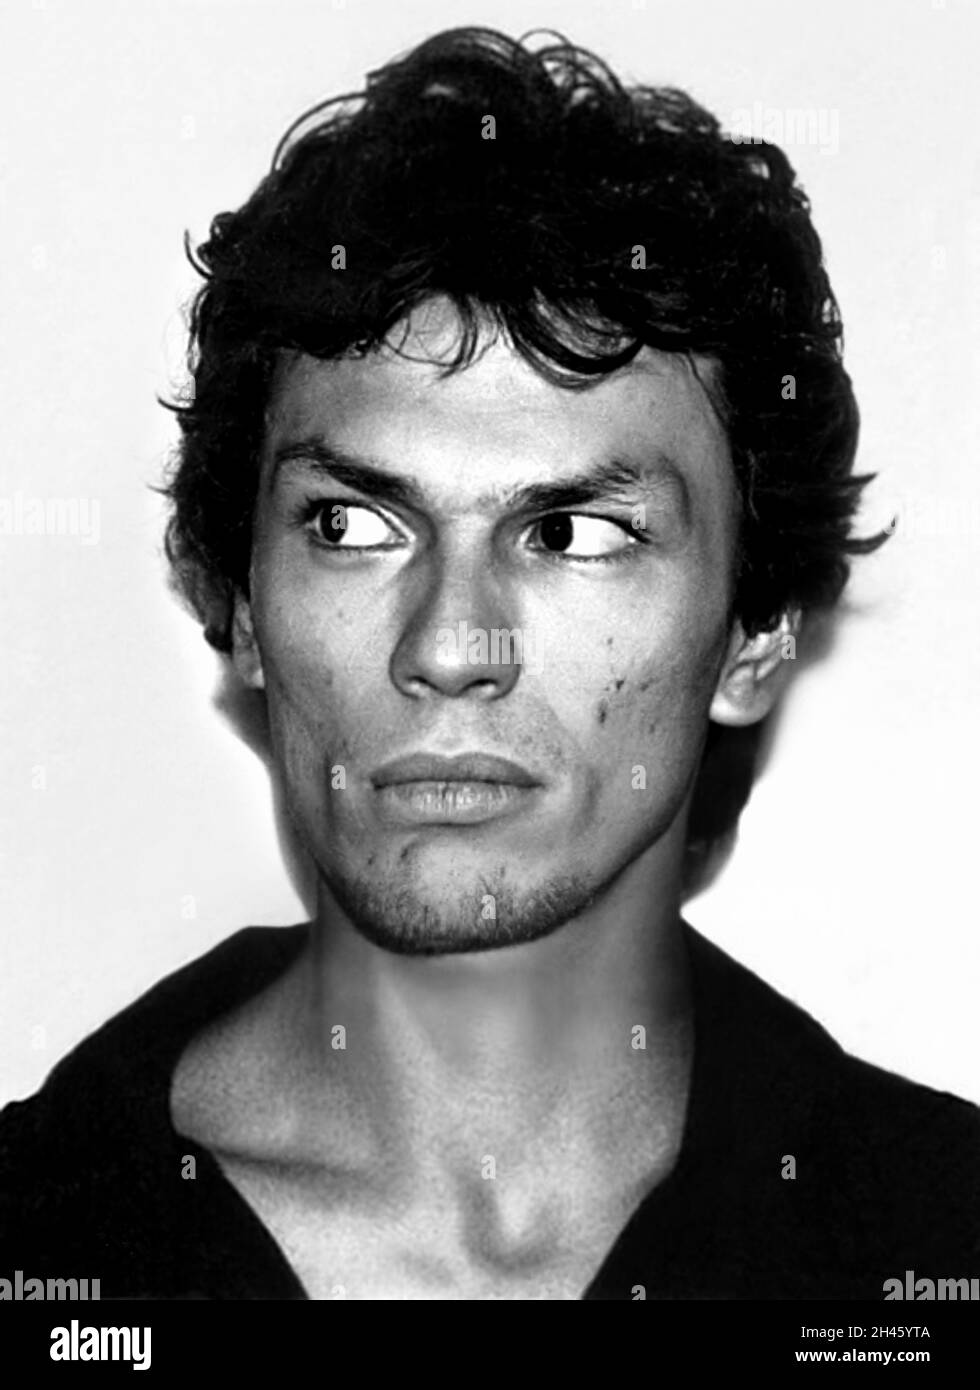 1985 , LOS ANGELES , USA : il serial killer satanista RICHARD RAMIREZ ( 1960 - 2013 ), nato Ricardo Leyva Munoz Ramírez , arrestato in un colpo di scena dal Dipartimento di polizia di Los Angeles . Ramirez ' The Night Stalker ' era anche stupratore seriale , rapinatore , molestatore bambino e burglar , era un killer americano che uccise almeno 13 persone , dal 17 marzo al 31 agosto 1985 . Fotografo sconosciuto .- MUG SHOT - MUG-SHOT - SERIAL KILLER - ritratto - ritratto - serial-killer - assassino seriale - CRONACA nera - criminale - criminale - SERIAL KILLER - foto segnaletica della Poliziia - SATANISMO Foto Stock